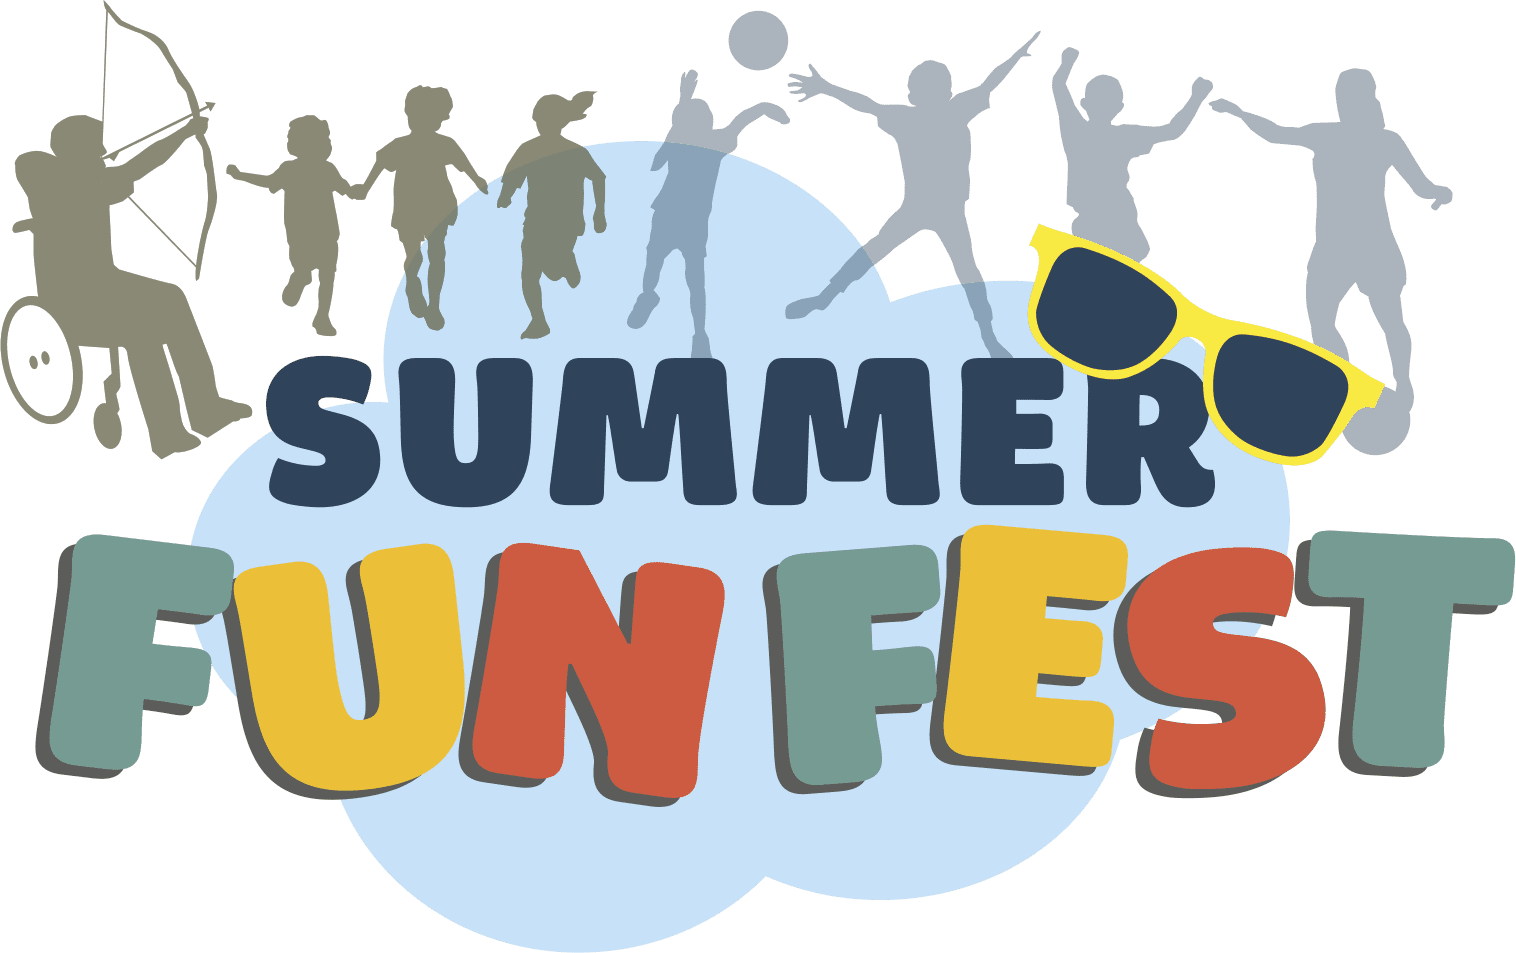 summer fun 2022 logo